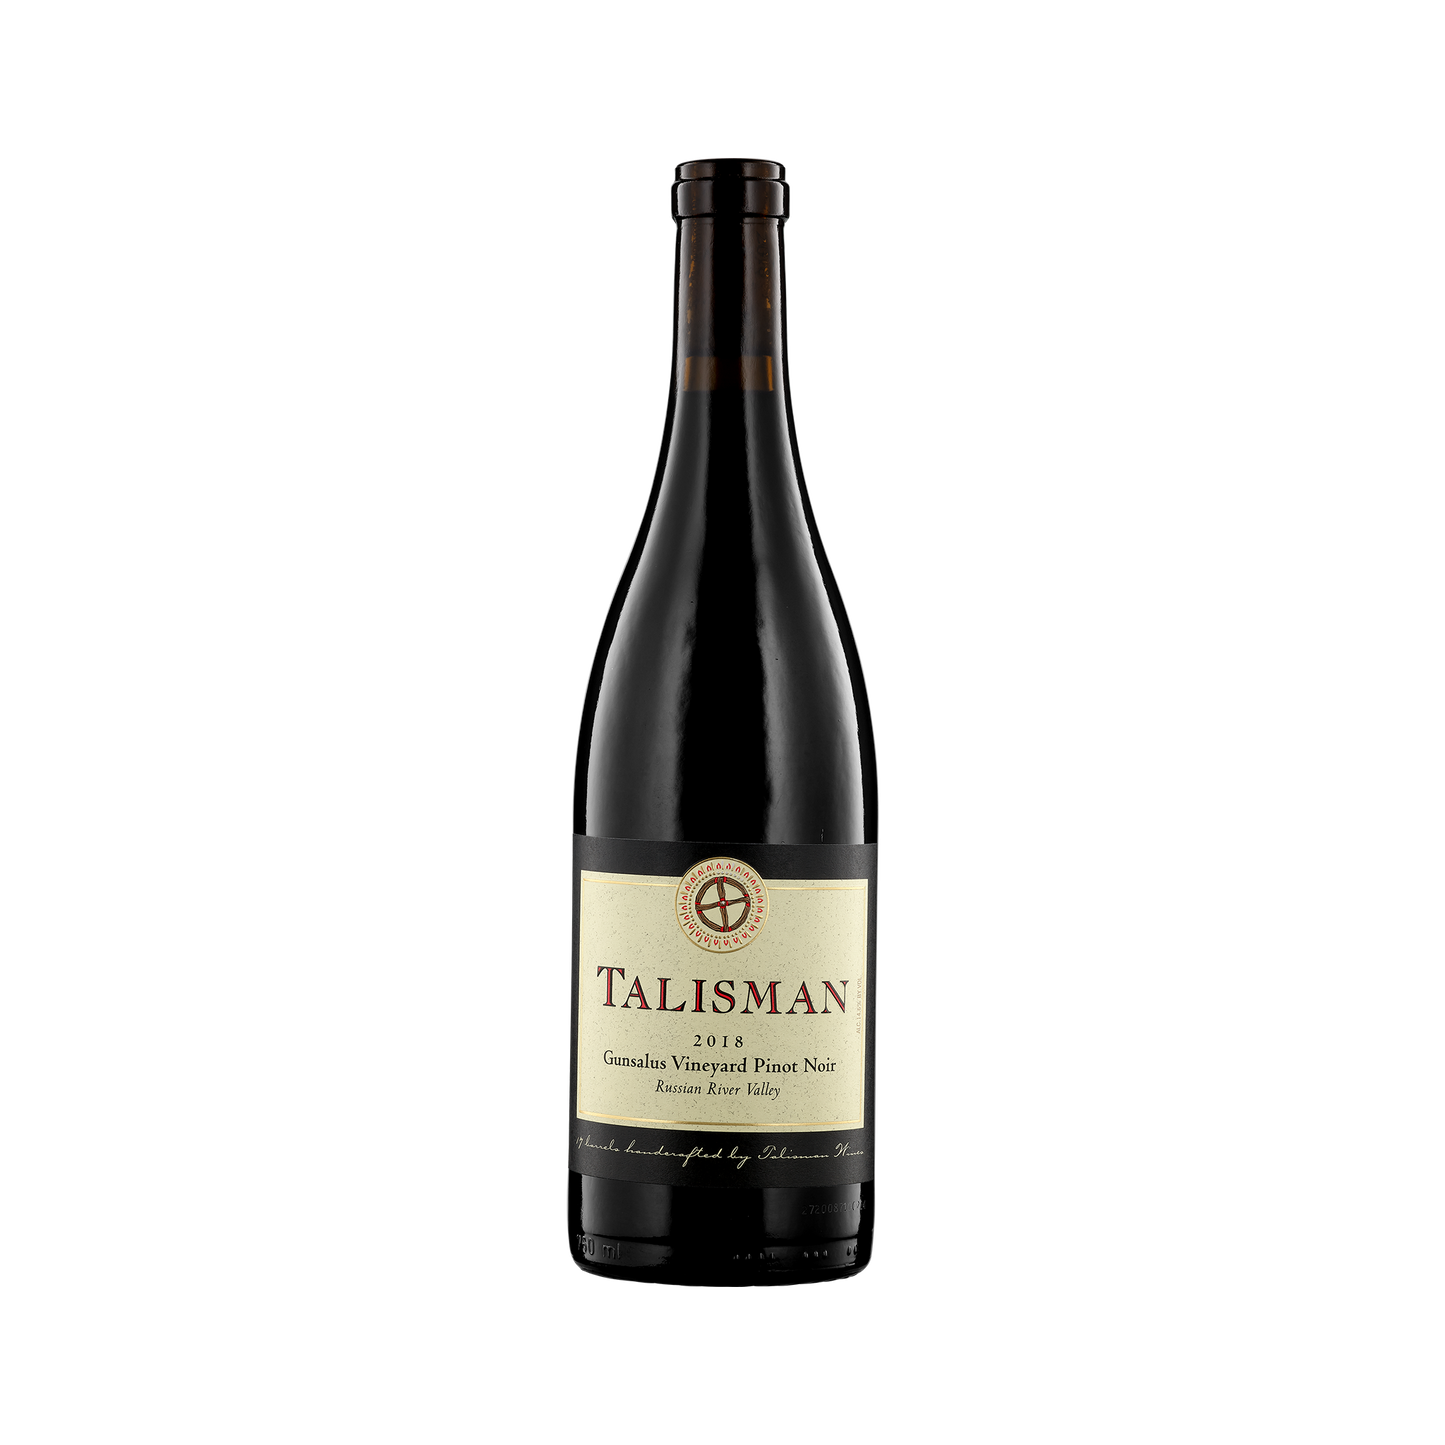 A bottle of Talisman 2018 Pinot Noir - Gunsalus Vineyard